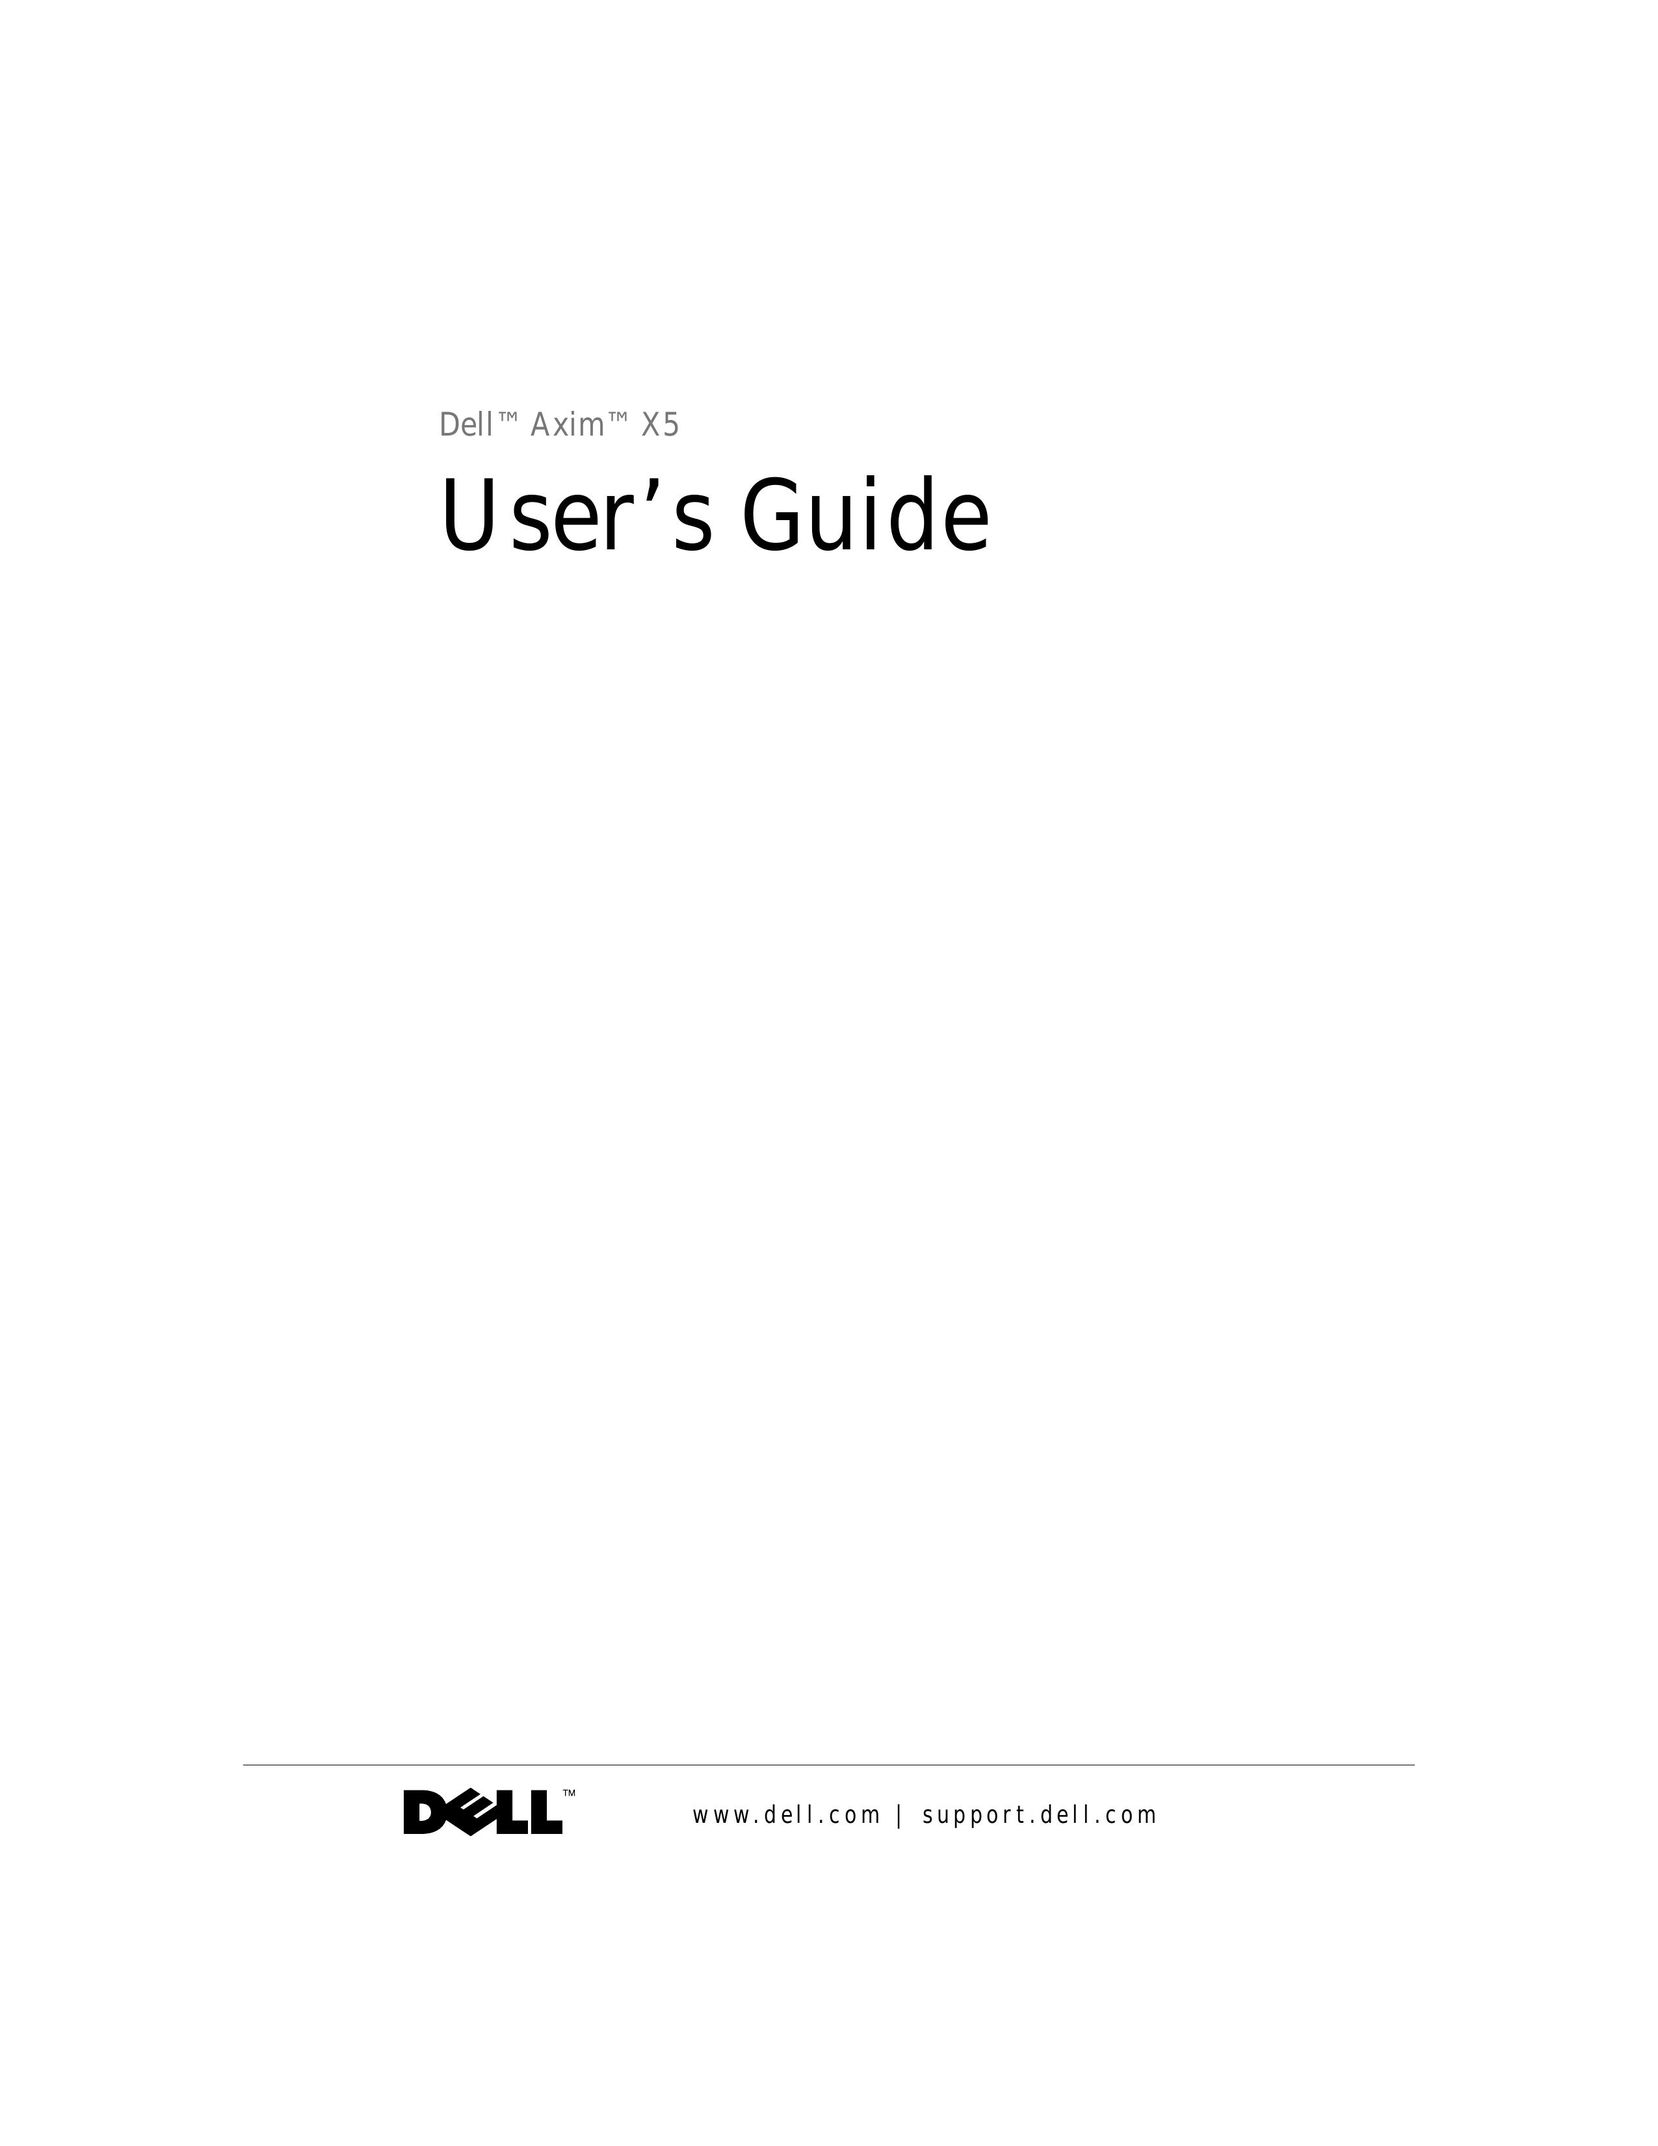 Dell Axim X5 PDAs & Smartphones User Manual